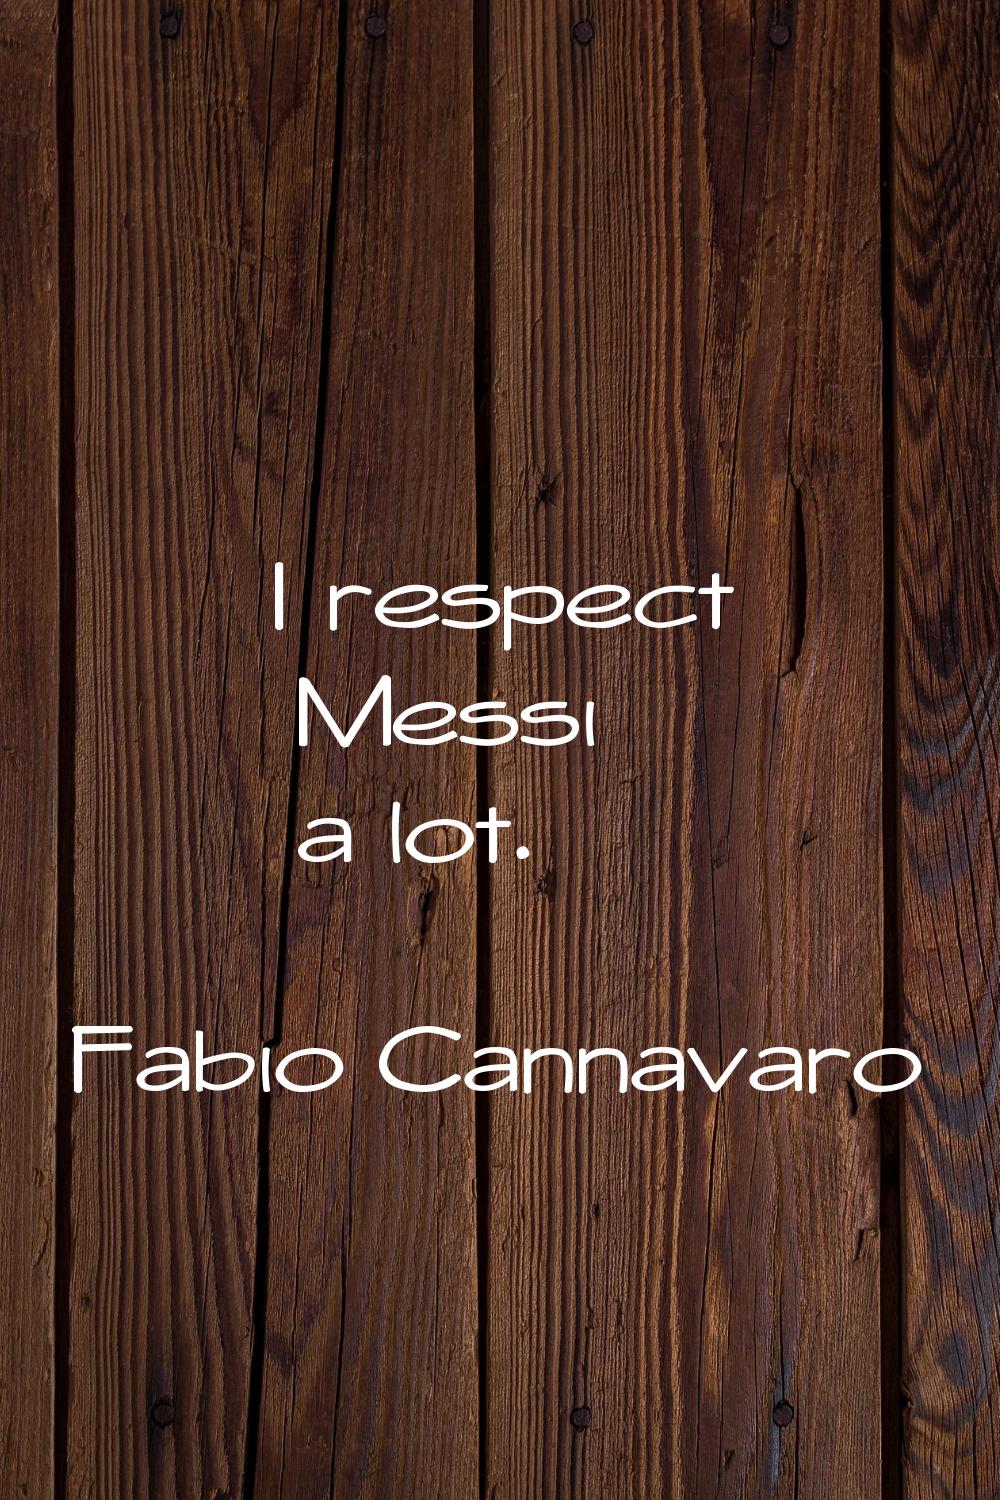 I respect Messi a lot.